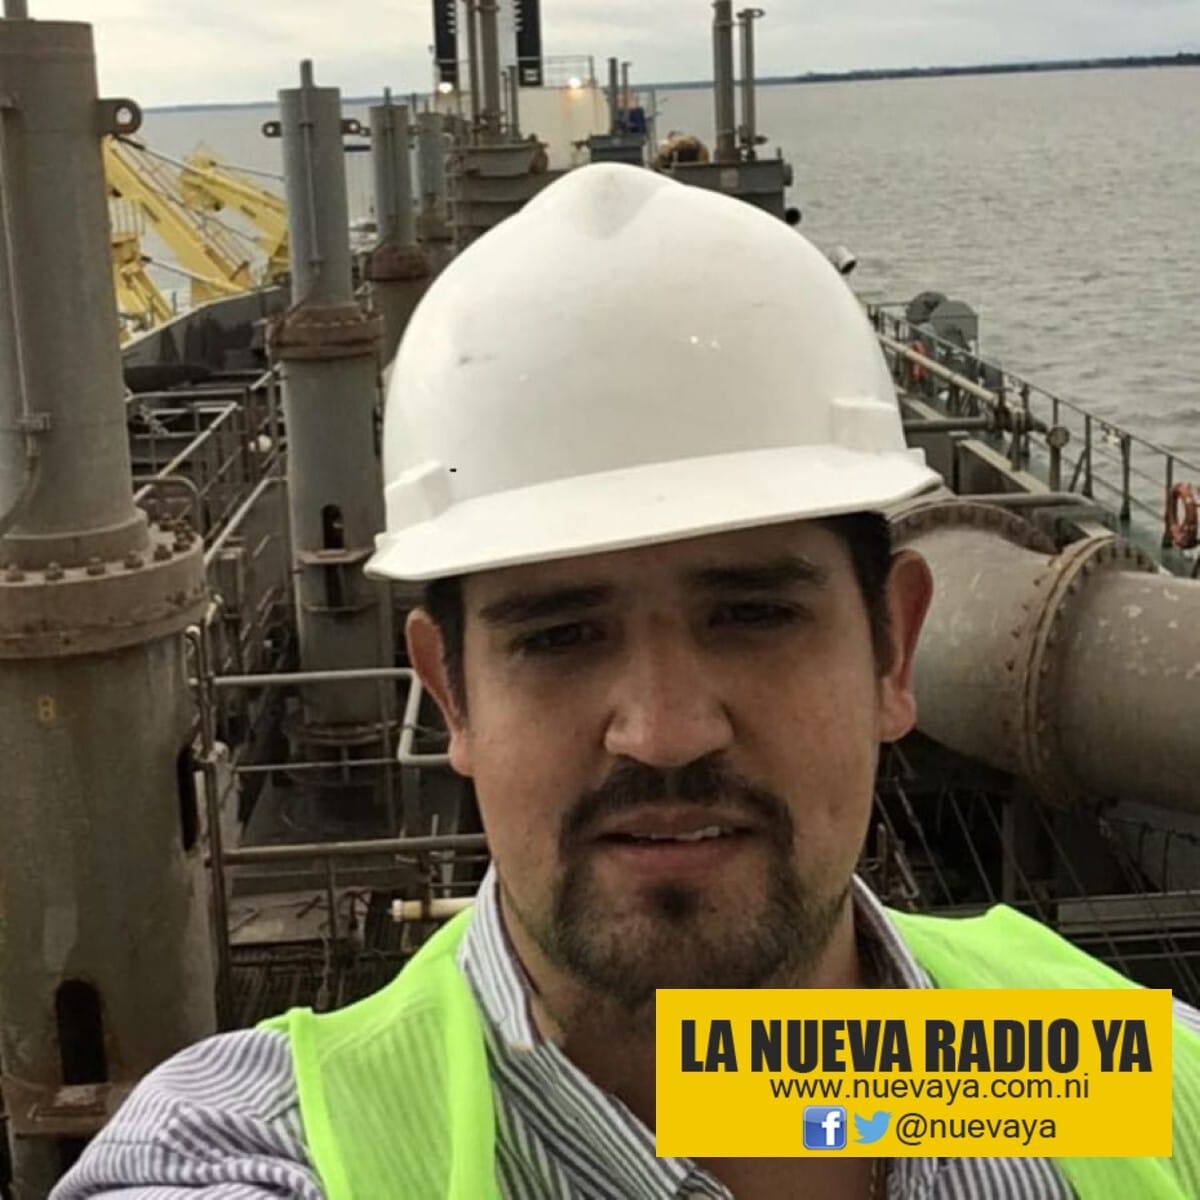 El ingeniero mexicano Eduardo Martínez, de 34 años